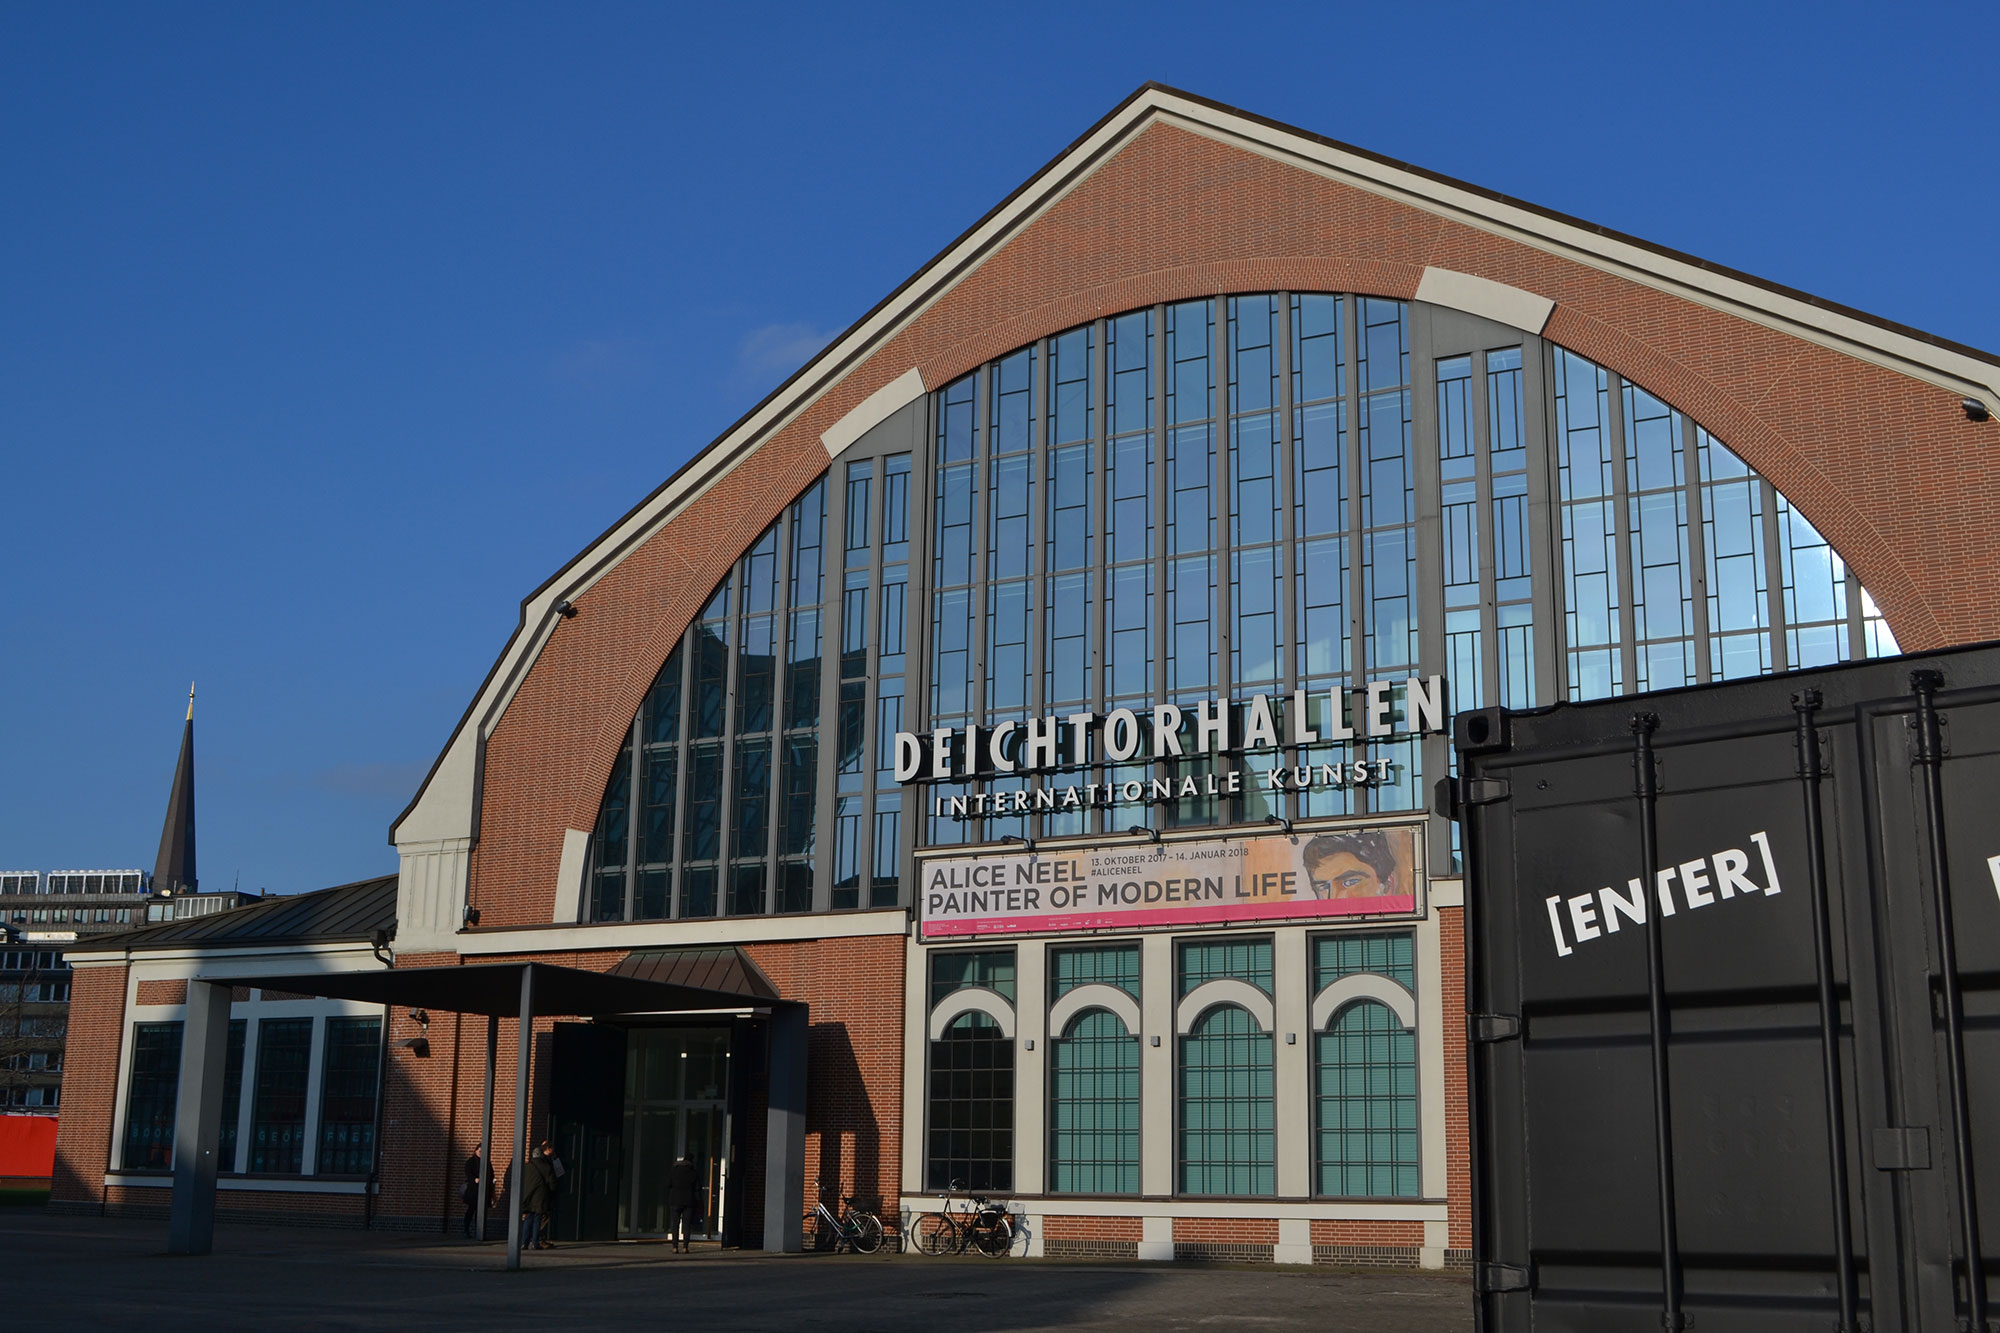 Eingang zu den Hamburger Deichtorhallen mit brauner Fassade und Runbogenfenstern